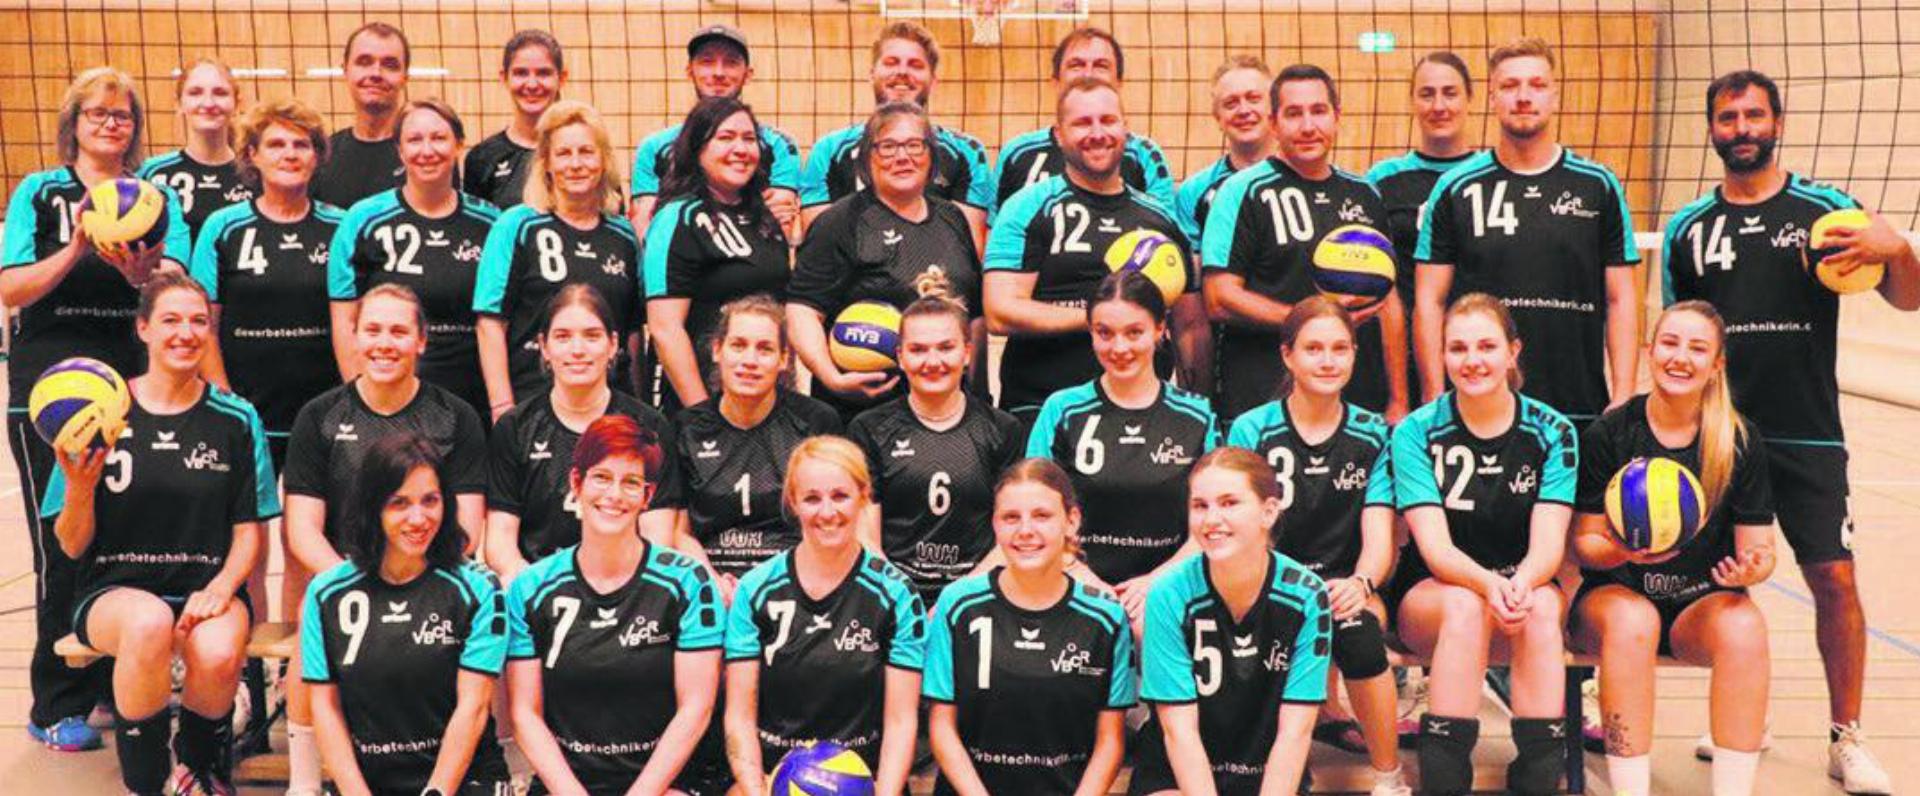 Die Rheinfelder Volleyballerinnen und Volleyballer können auf eine erfolgreiche Vorrunde zurückblicken. Foto: zVg